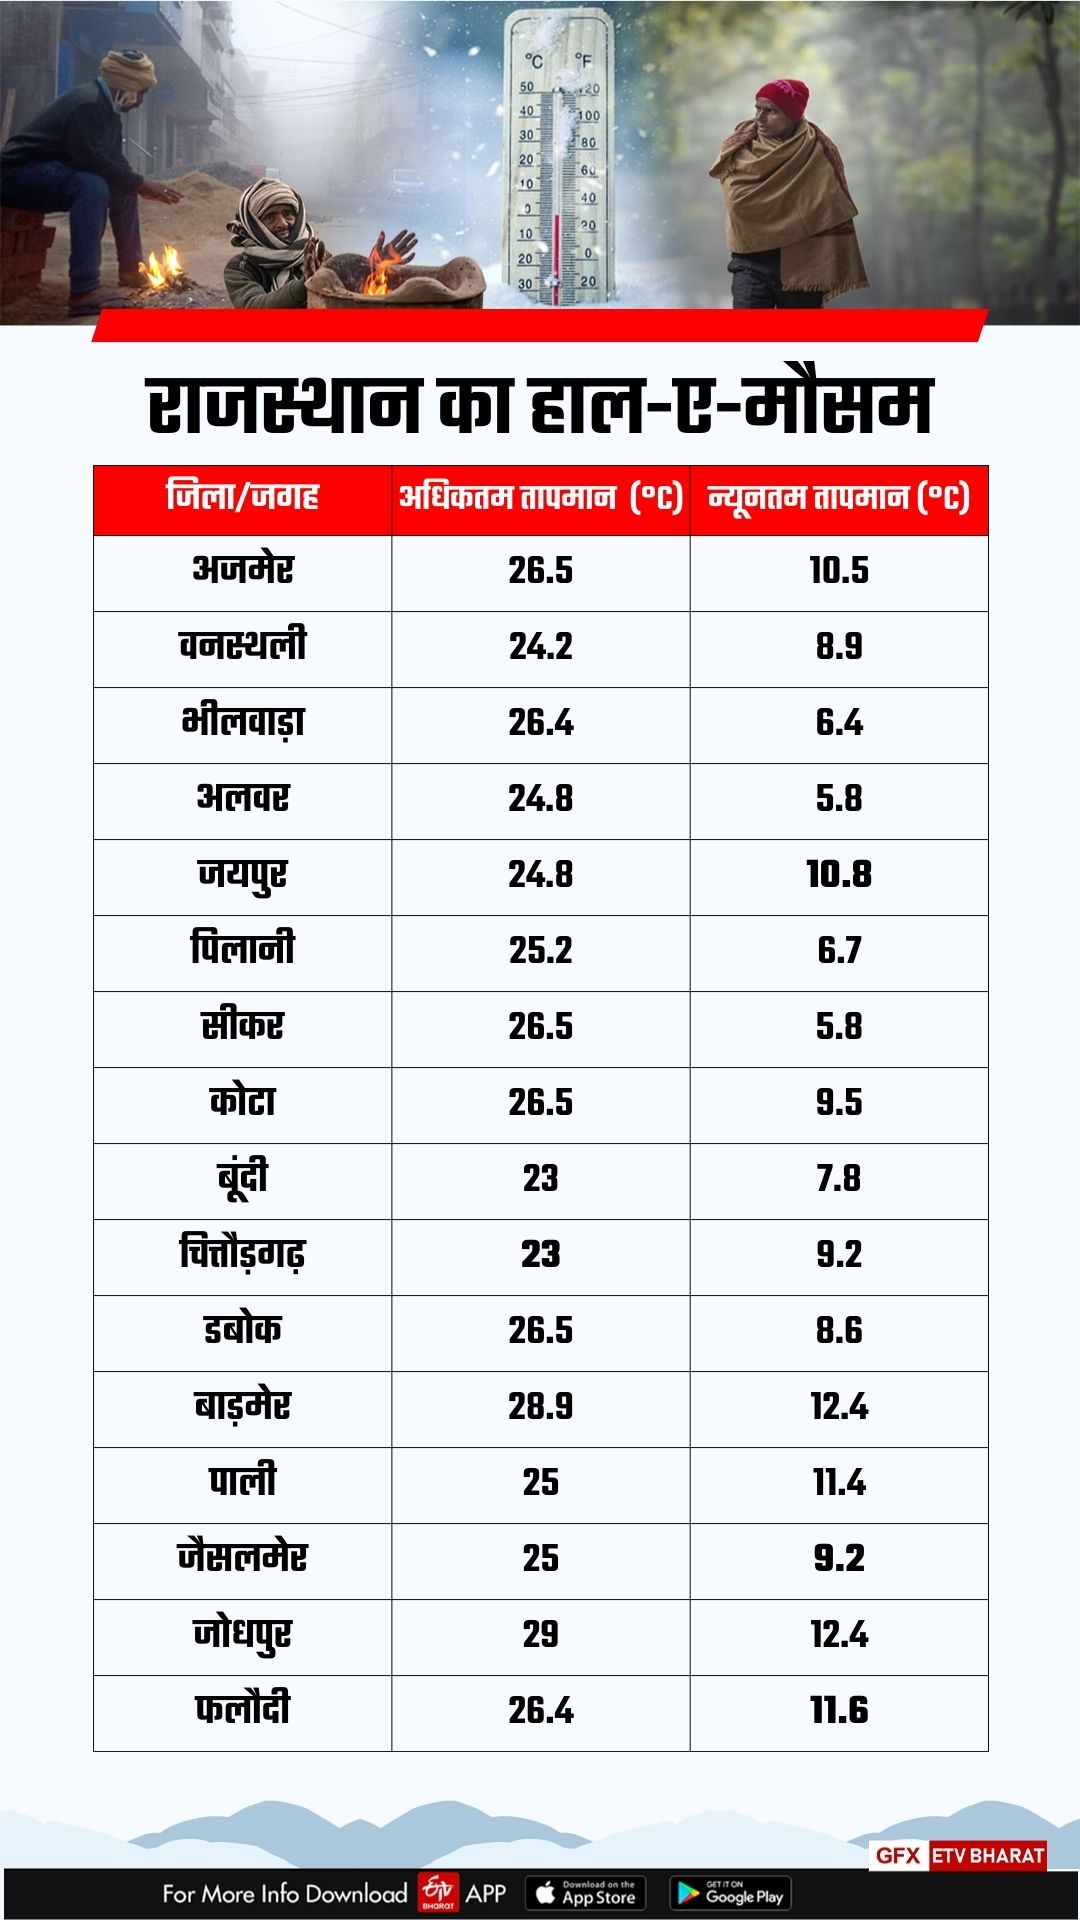 Maximum and minimum temperature of last 24 hours in the Rajasthan